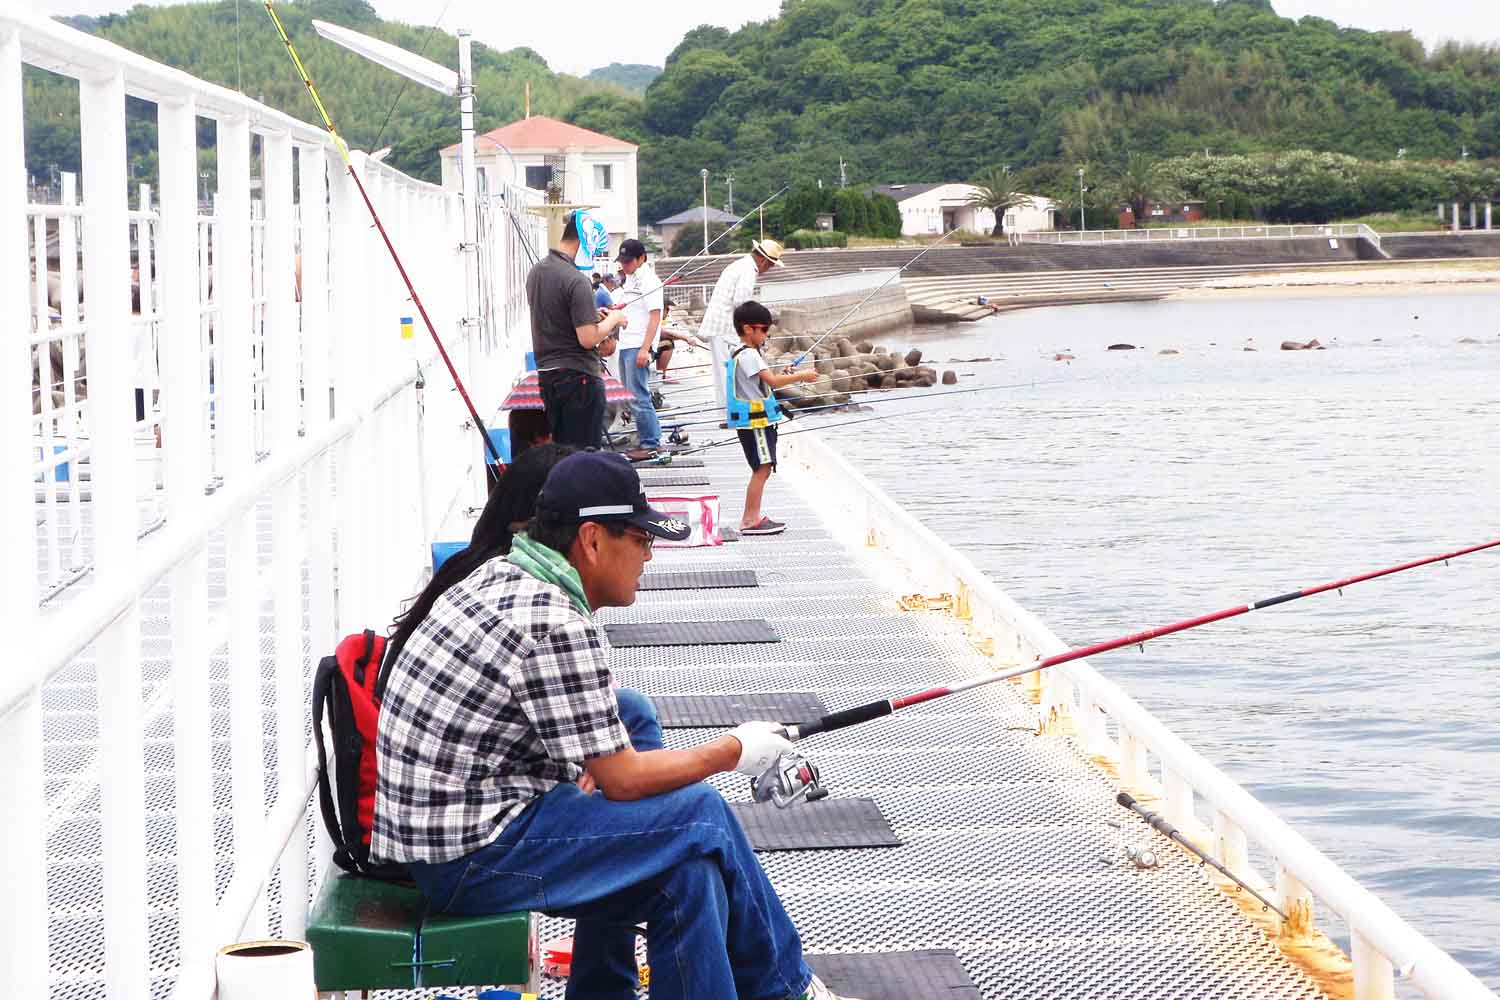 めちゃ楽しい海釣り公園へgo 姫路市立遊漁センターの遊び方を紹介 関西のつりweb 釣りの総合情報メディアmeme